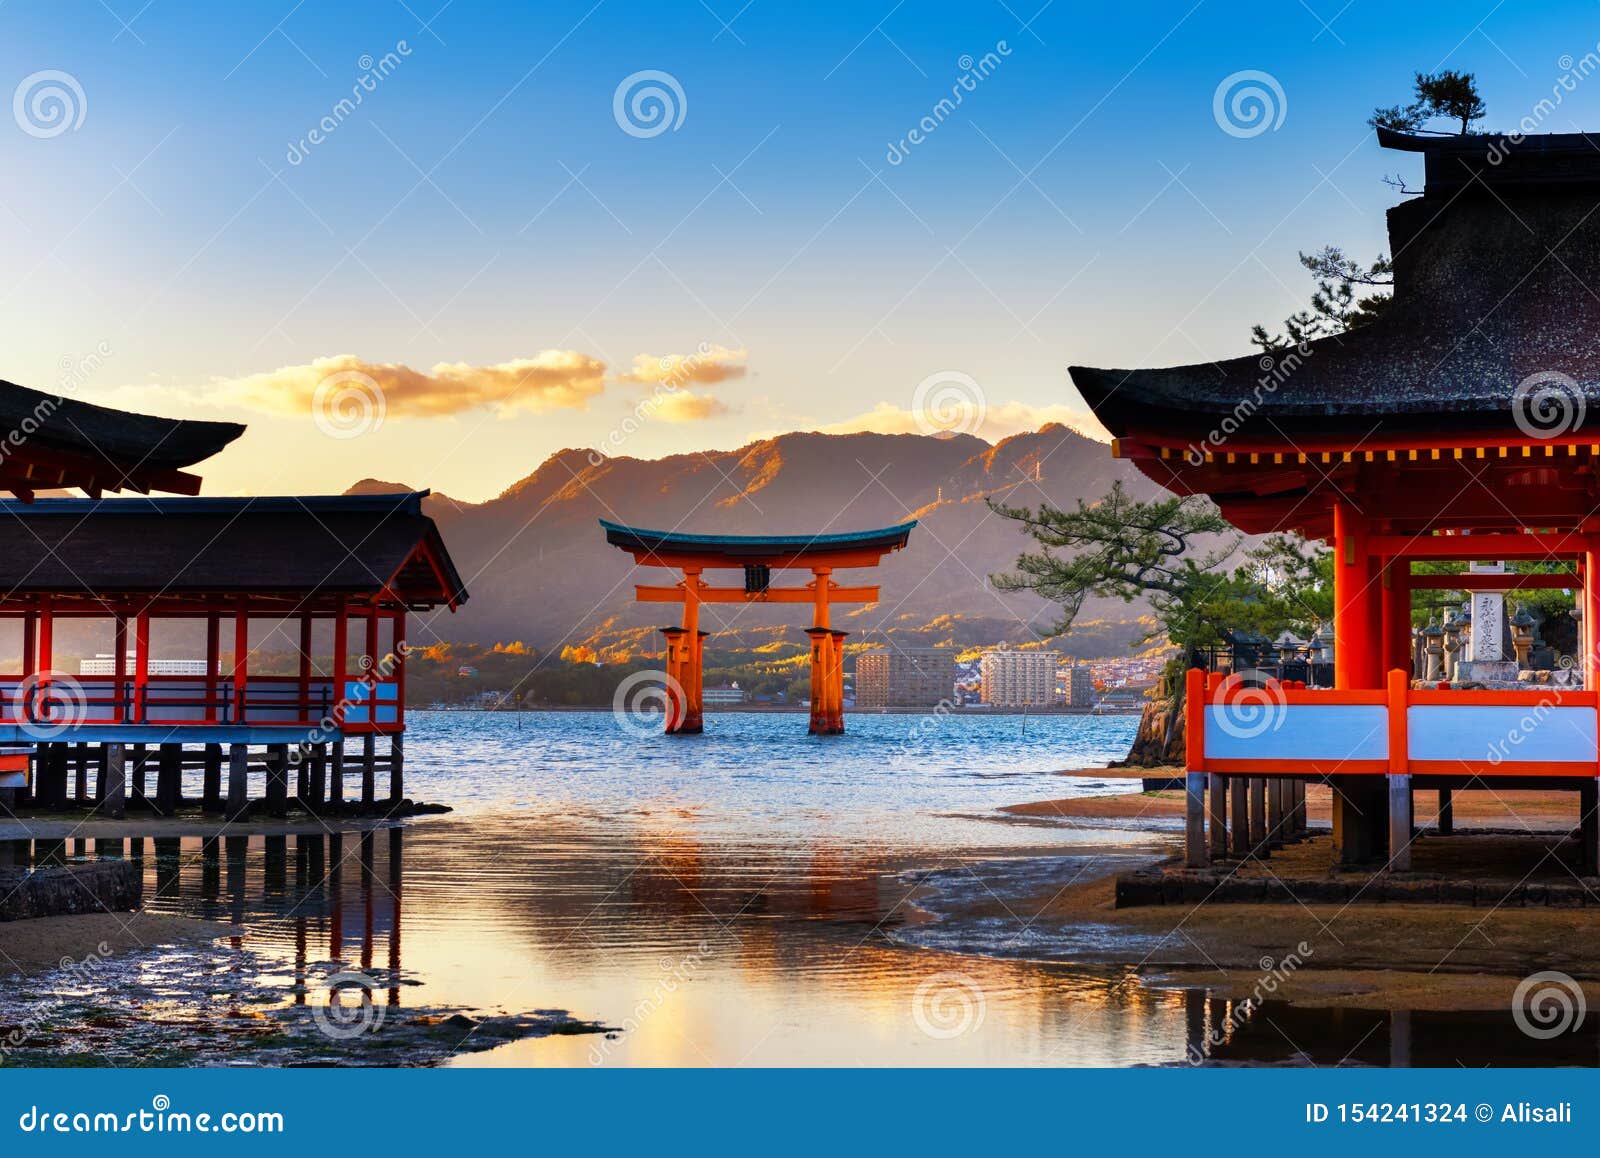 Architecture at Itsukushima Shrine Miyajima, Famous Floating Torii Gate,  Hiroshima, Japan, Travel Background Stock Photo - Image of buddhism,  landmark: 154241324